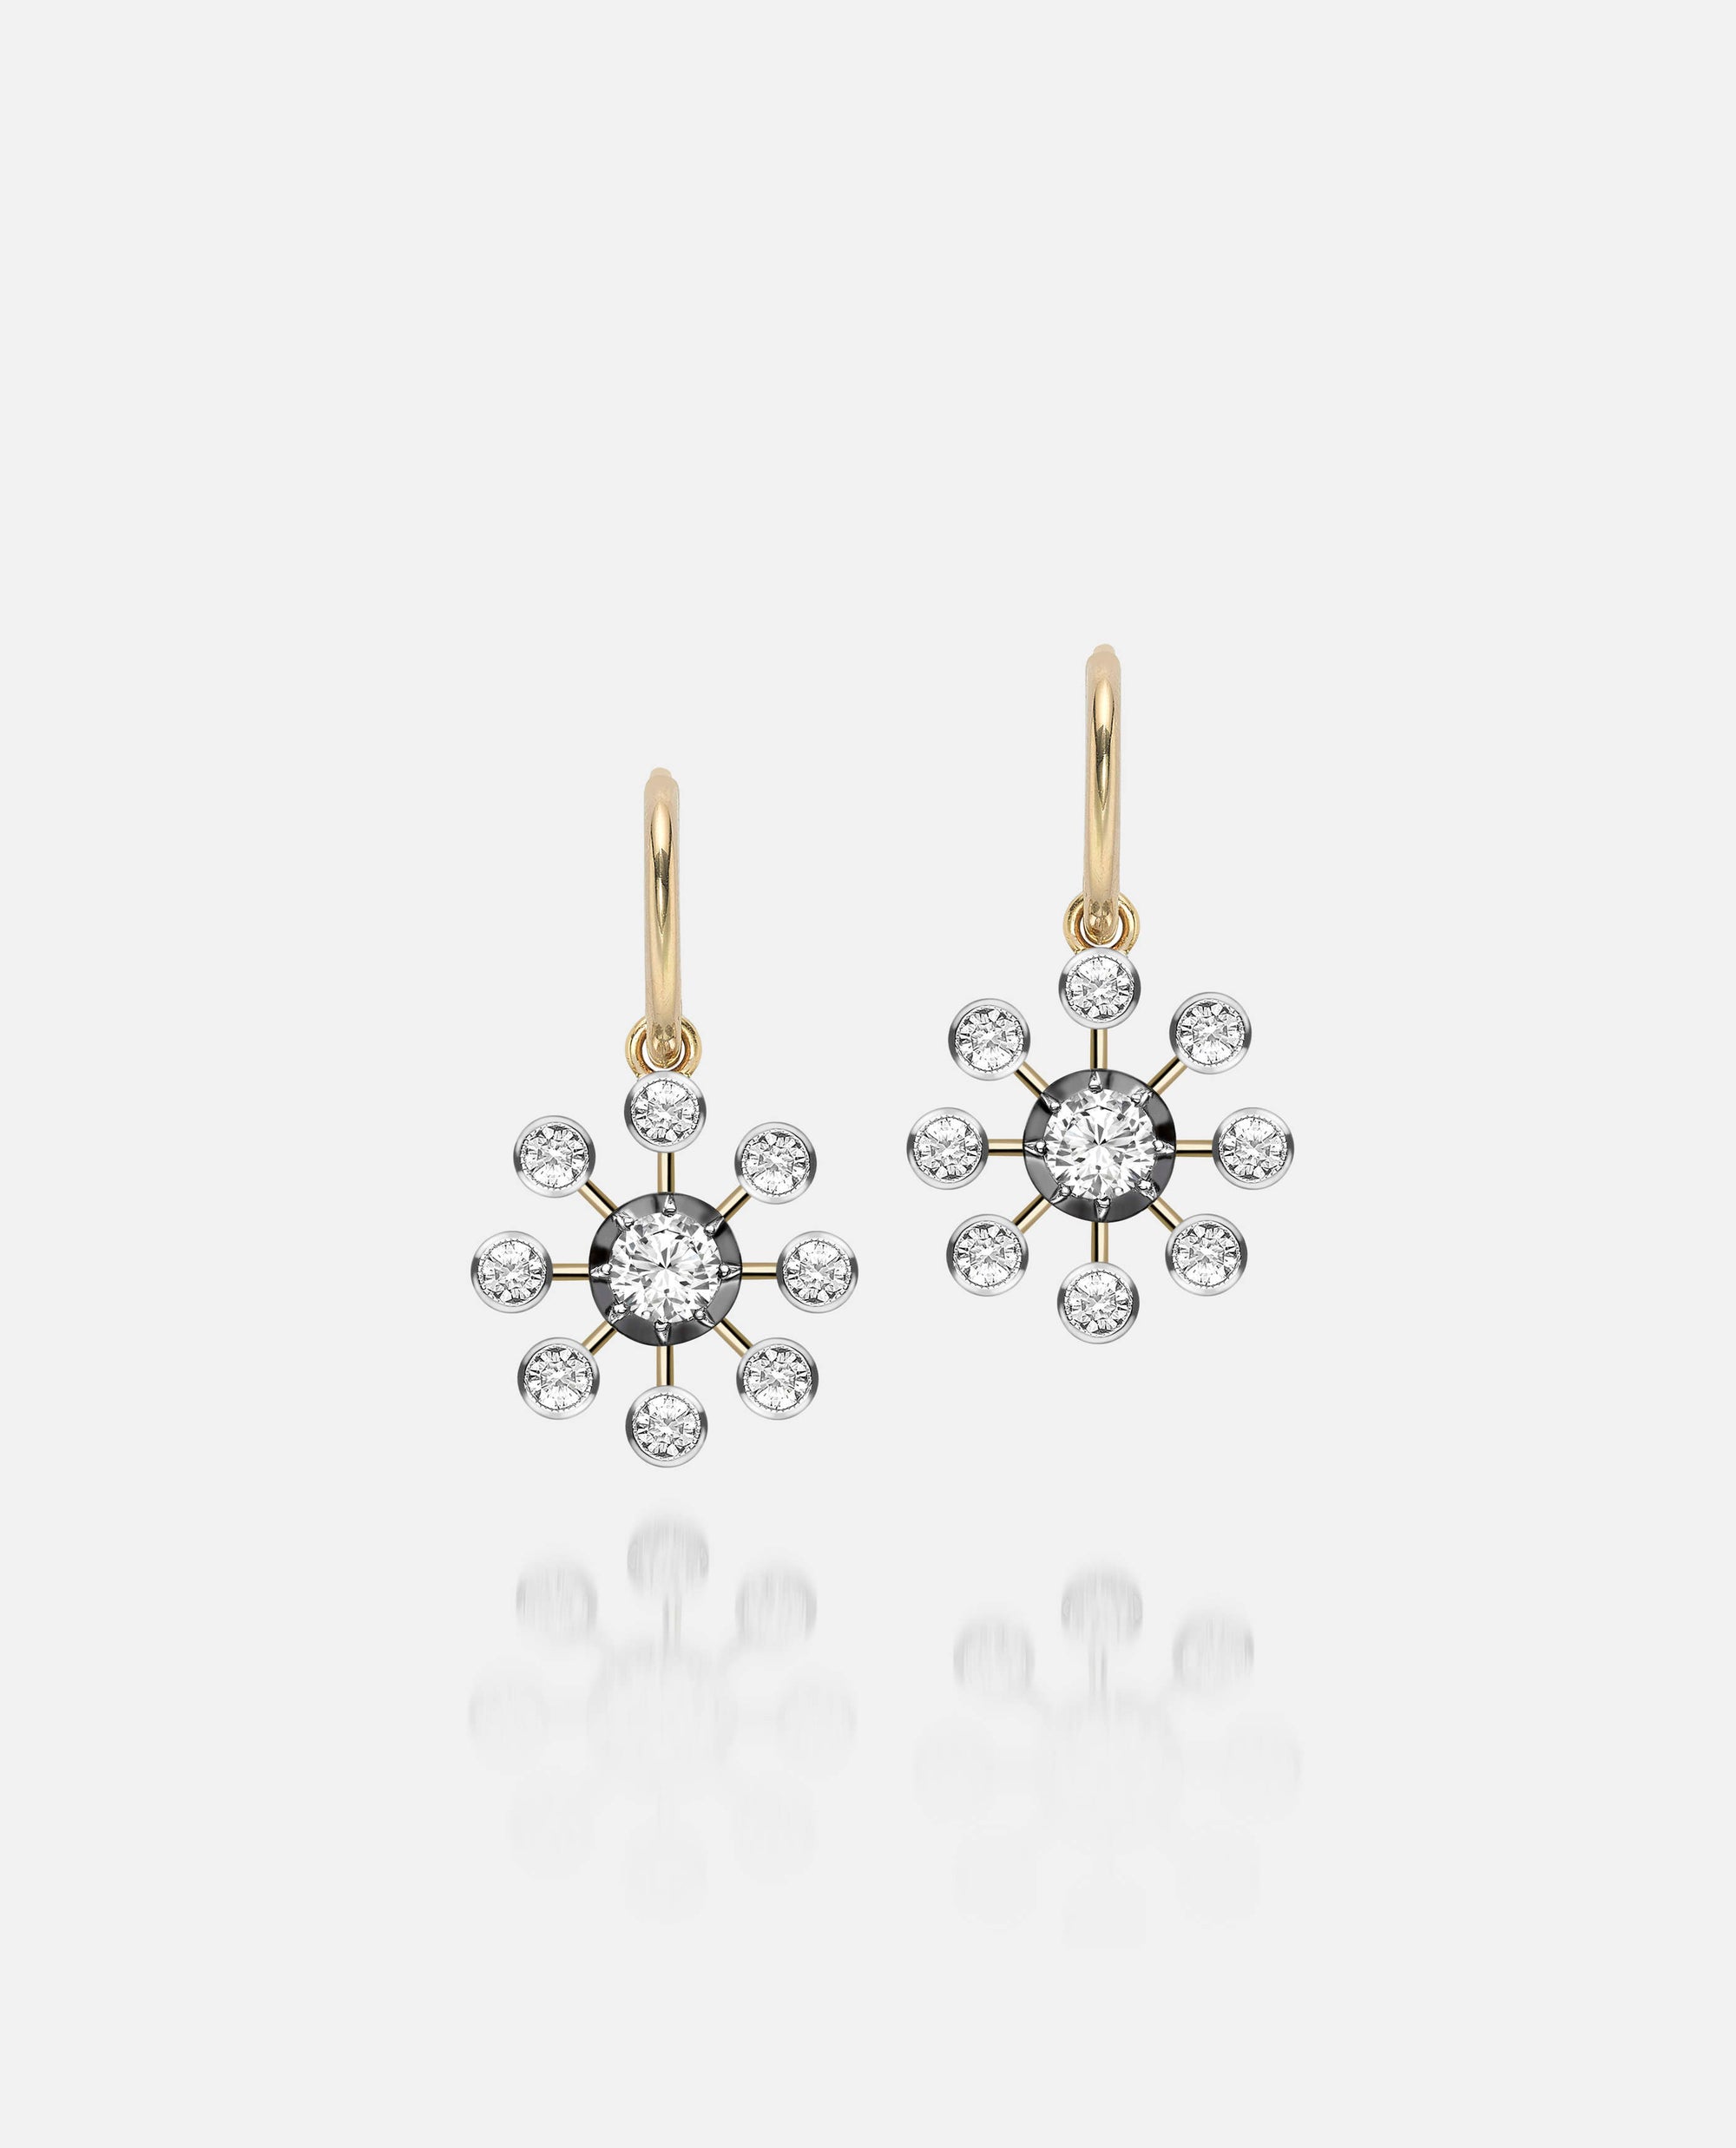 Gypset Bloom Earrings - Dandelion Diamond Earrings